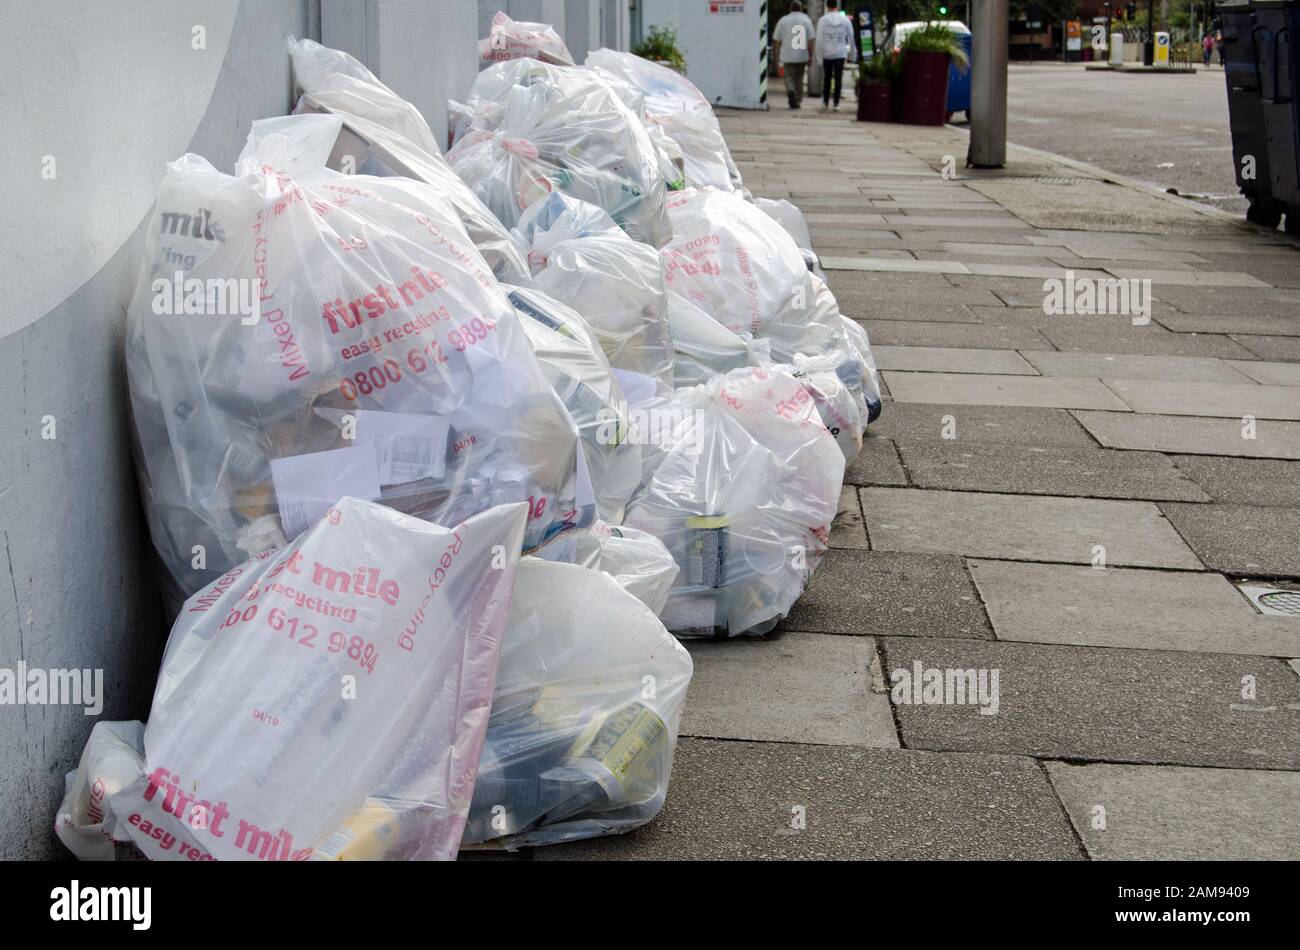 Londra, Regno Unito - 20 luglio 2019: Sacchetti di rifiuti riciclabili in attesa di essere raccolti su un marciapiede a Southwark, Londra. Foto Stock